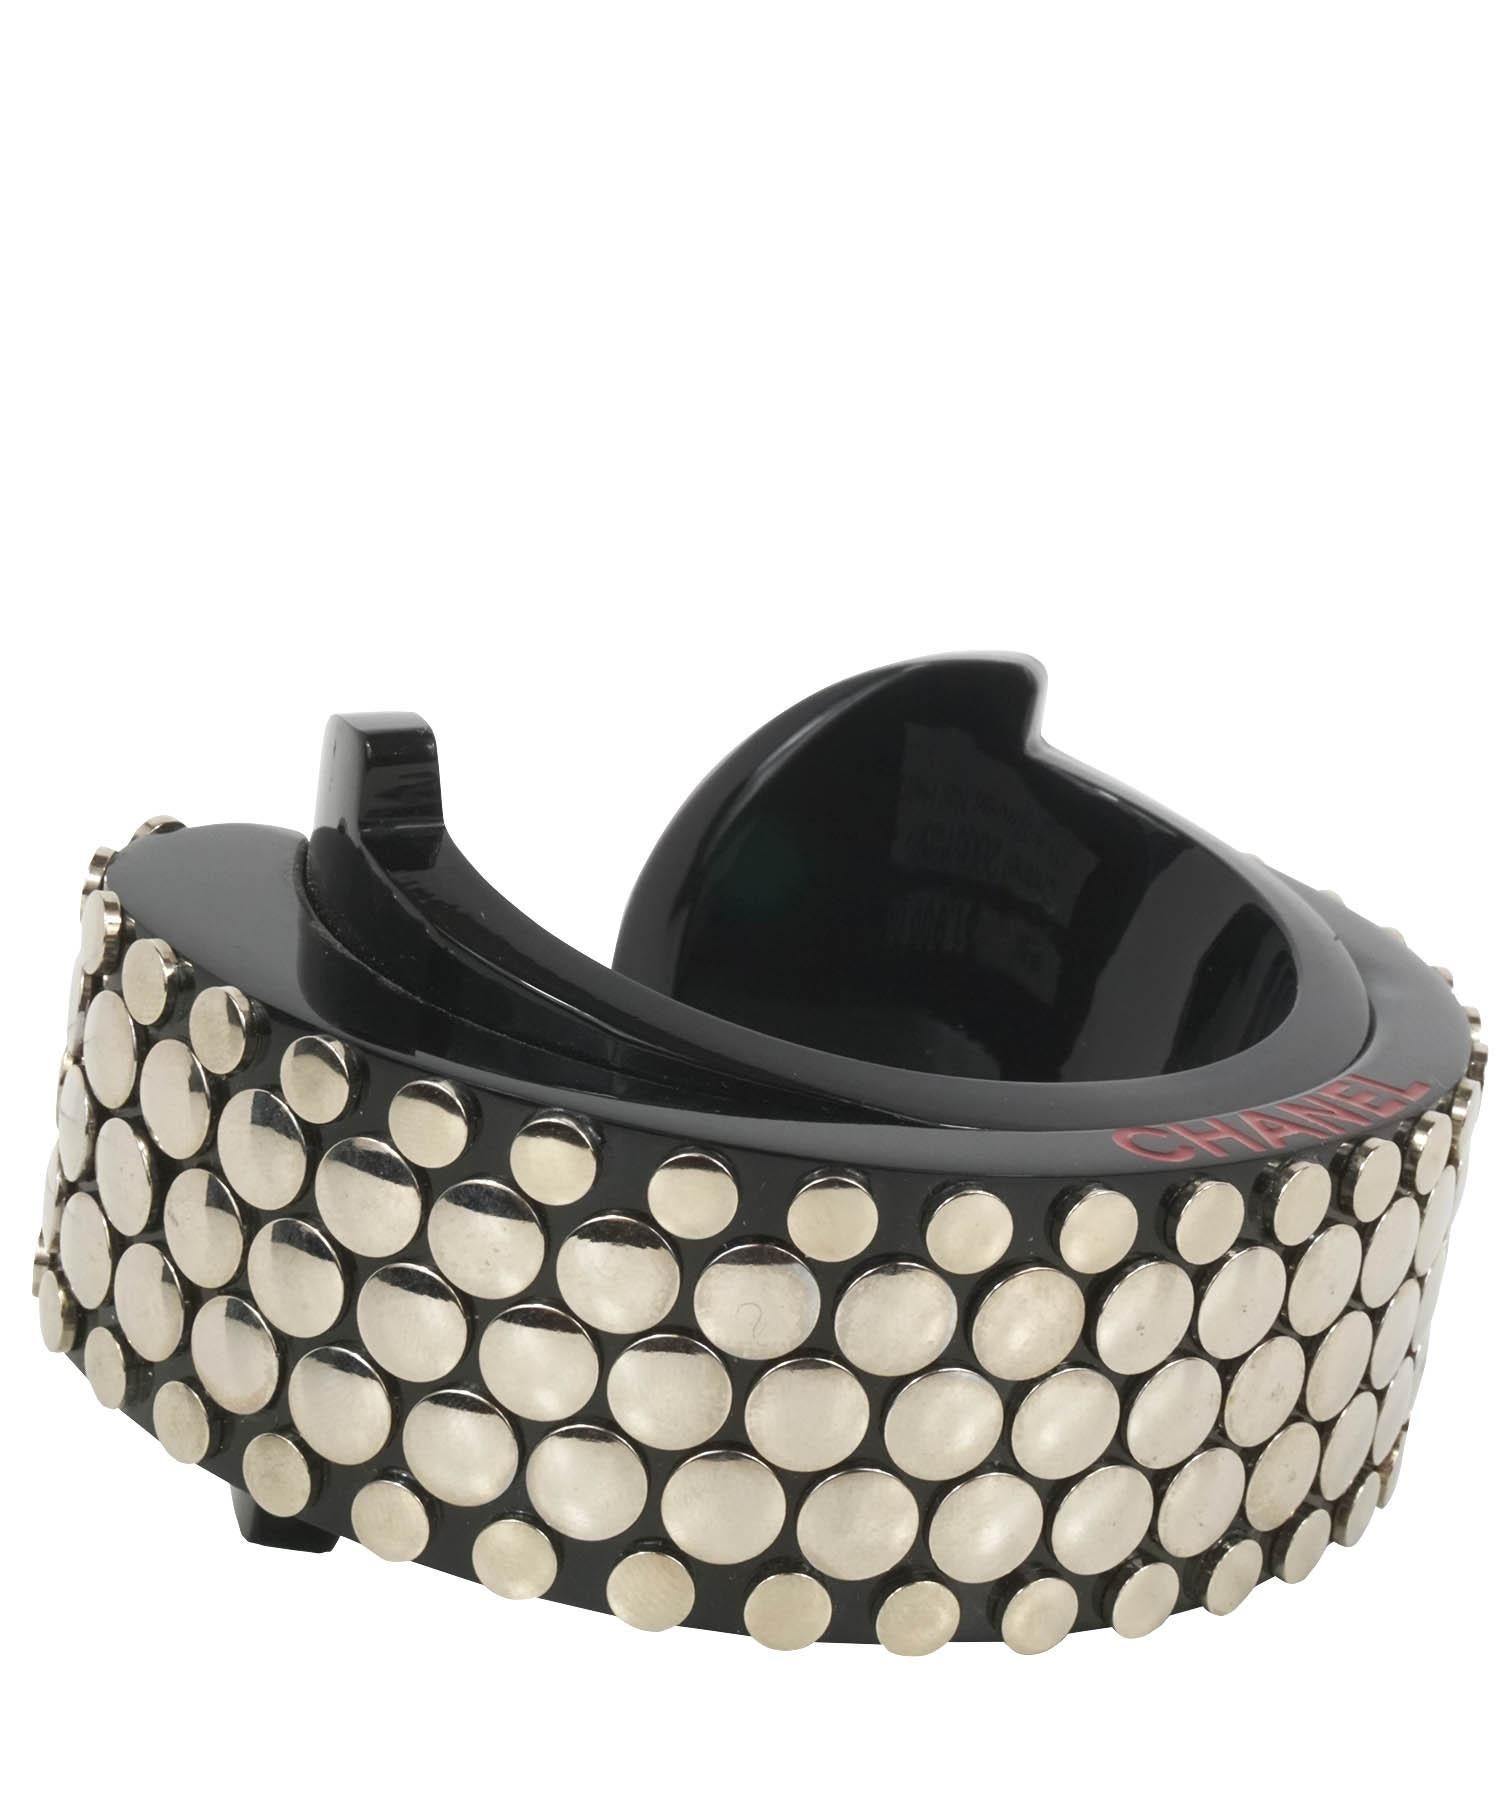 Chanel Vintage-Plexiglas-Armband aus der Collection'S 2005 aus schwarzem Harz mit silberfarbenen Nagelköpfen. Die Manschette hat eine CHANEL-Gravur am Seitenrand. Die Manschette ist breit und dick. Hergestellt in Italien. Die Manschette ist in